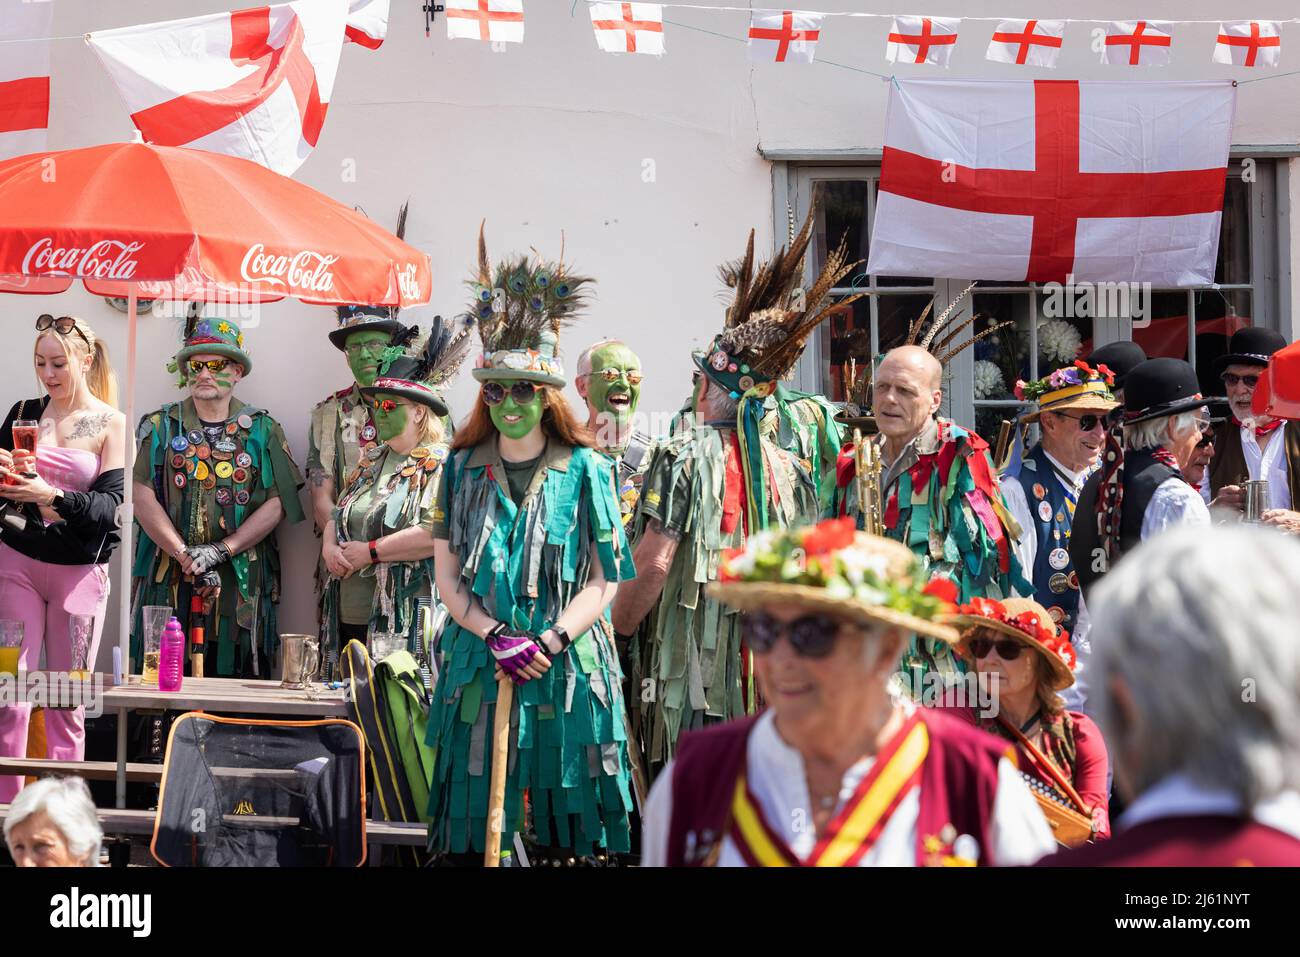 St Georges Day Inghilterra; celebrazioni con persone in costume, ballerini Morris e bandiera St Georges, tradizione inglese; Hundon, Suffolk UK Foto Stock